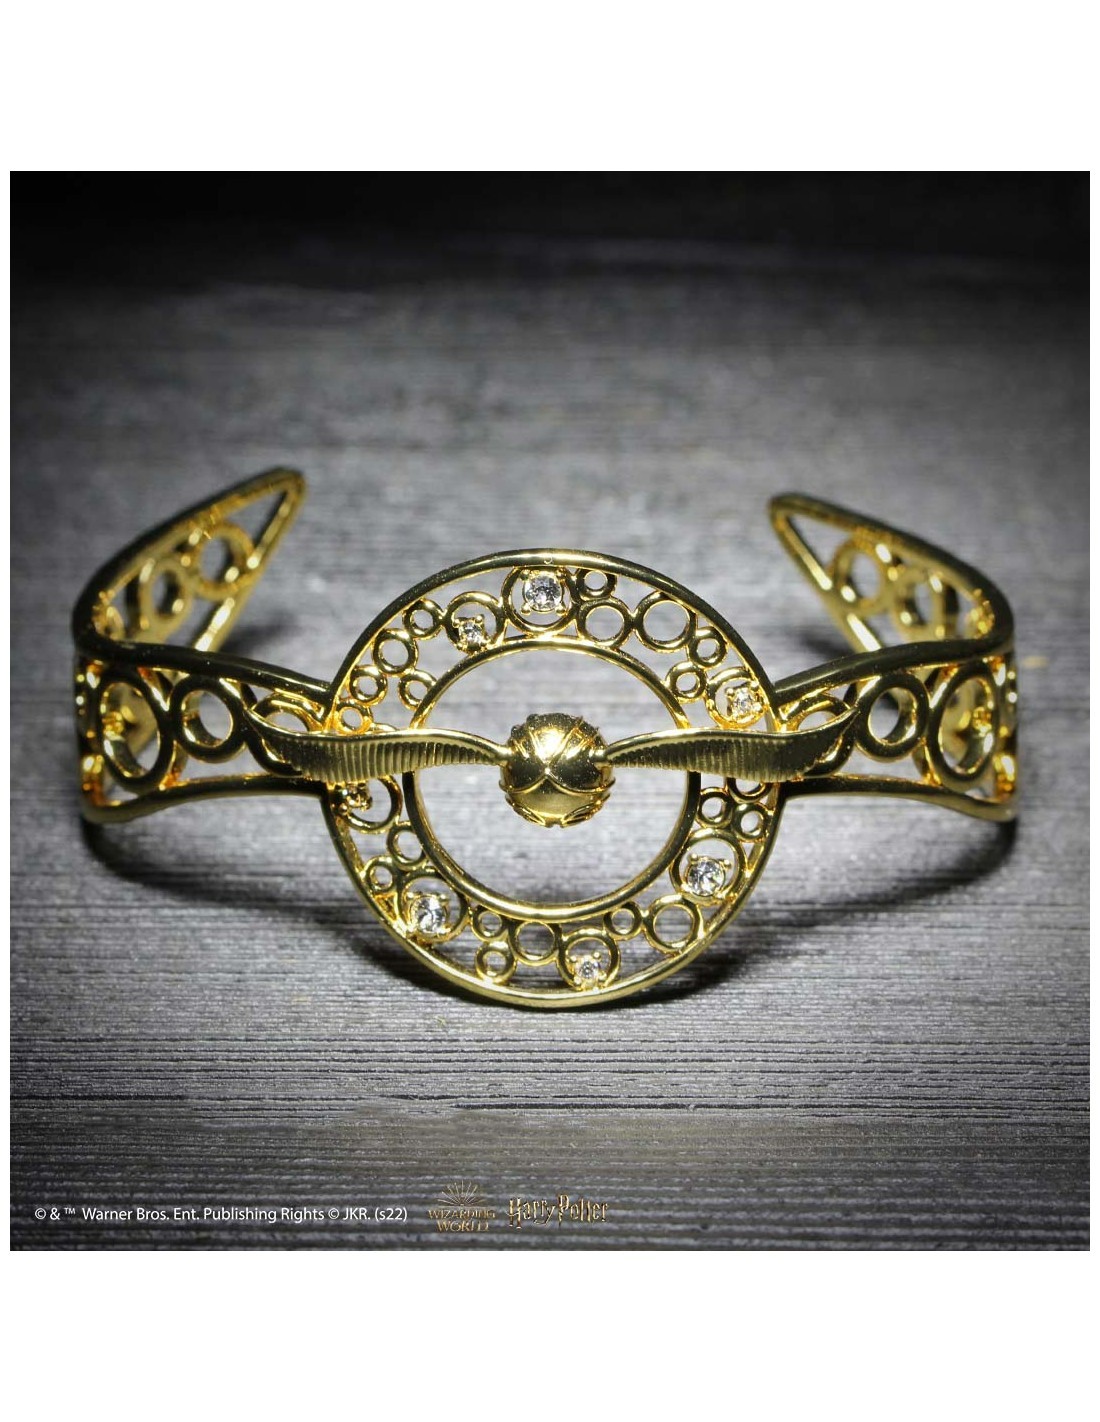 Dernières tendances : Les bracelets et les montres Harry Potter signés  Swarovski ! - La Plume de Poudlard - Le média d'actualité Harry Potter